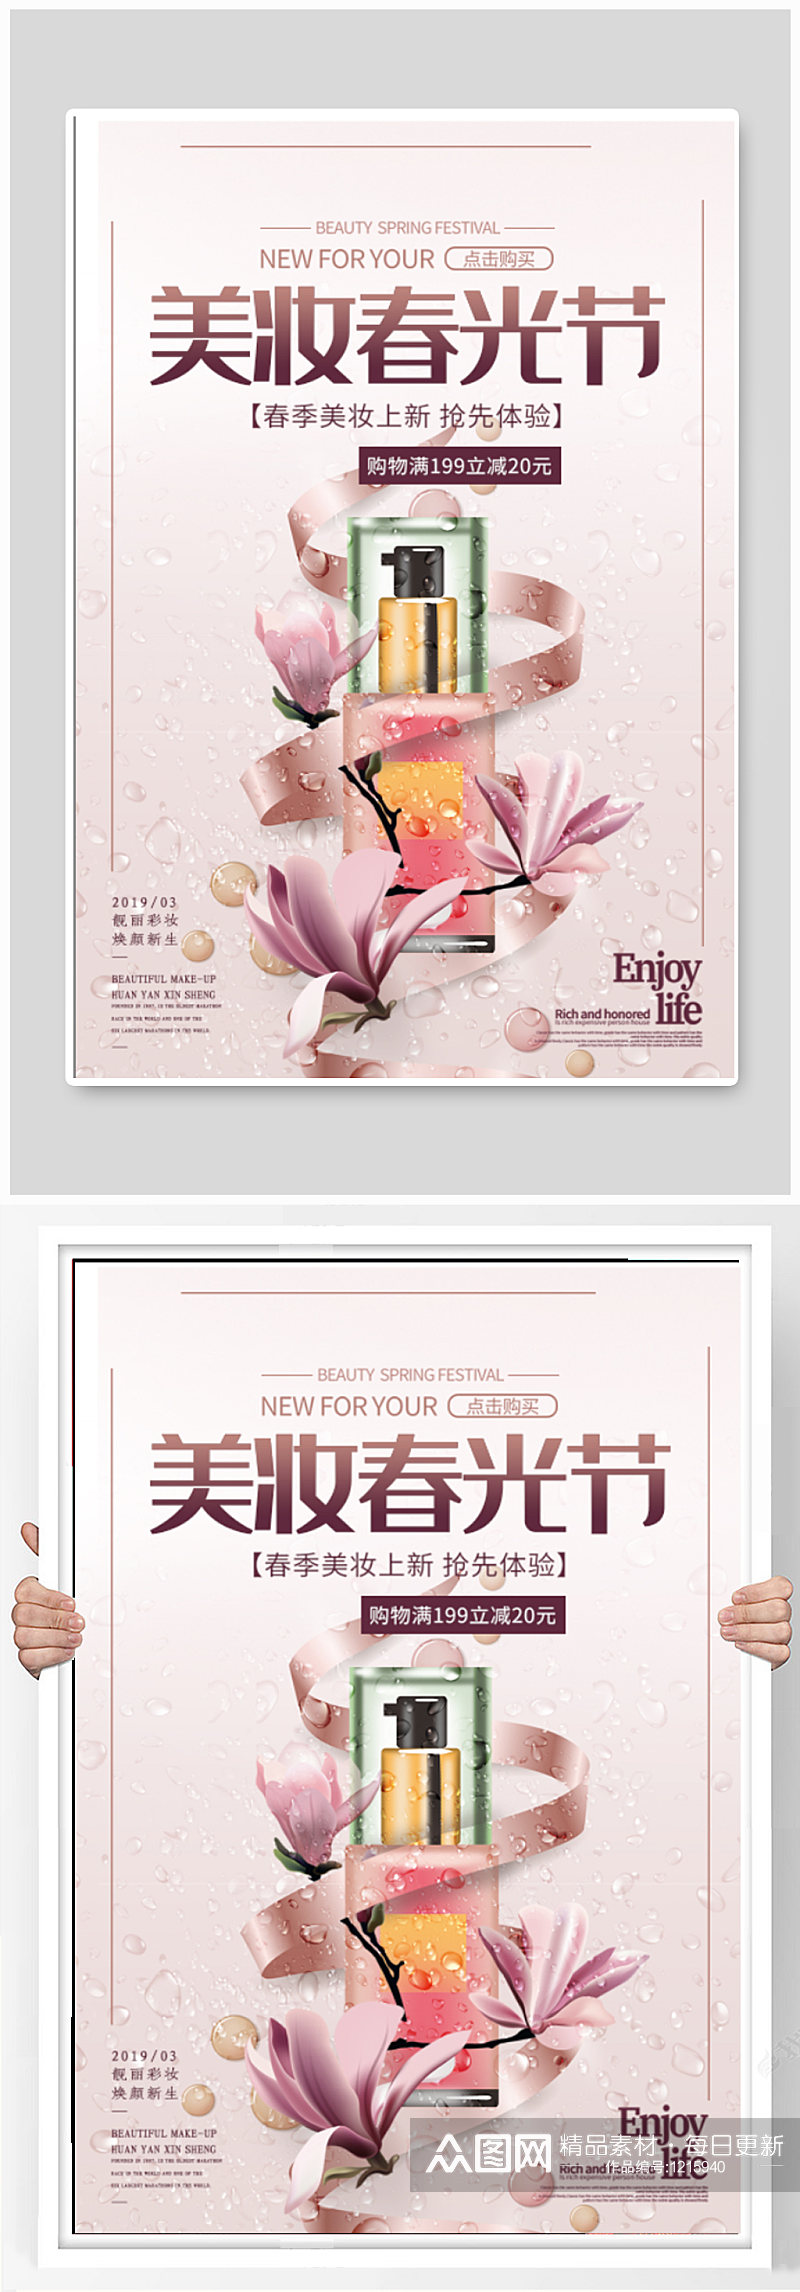 美妆春光节宣传海报素材